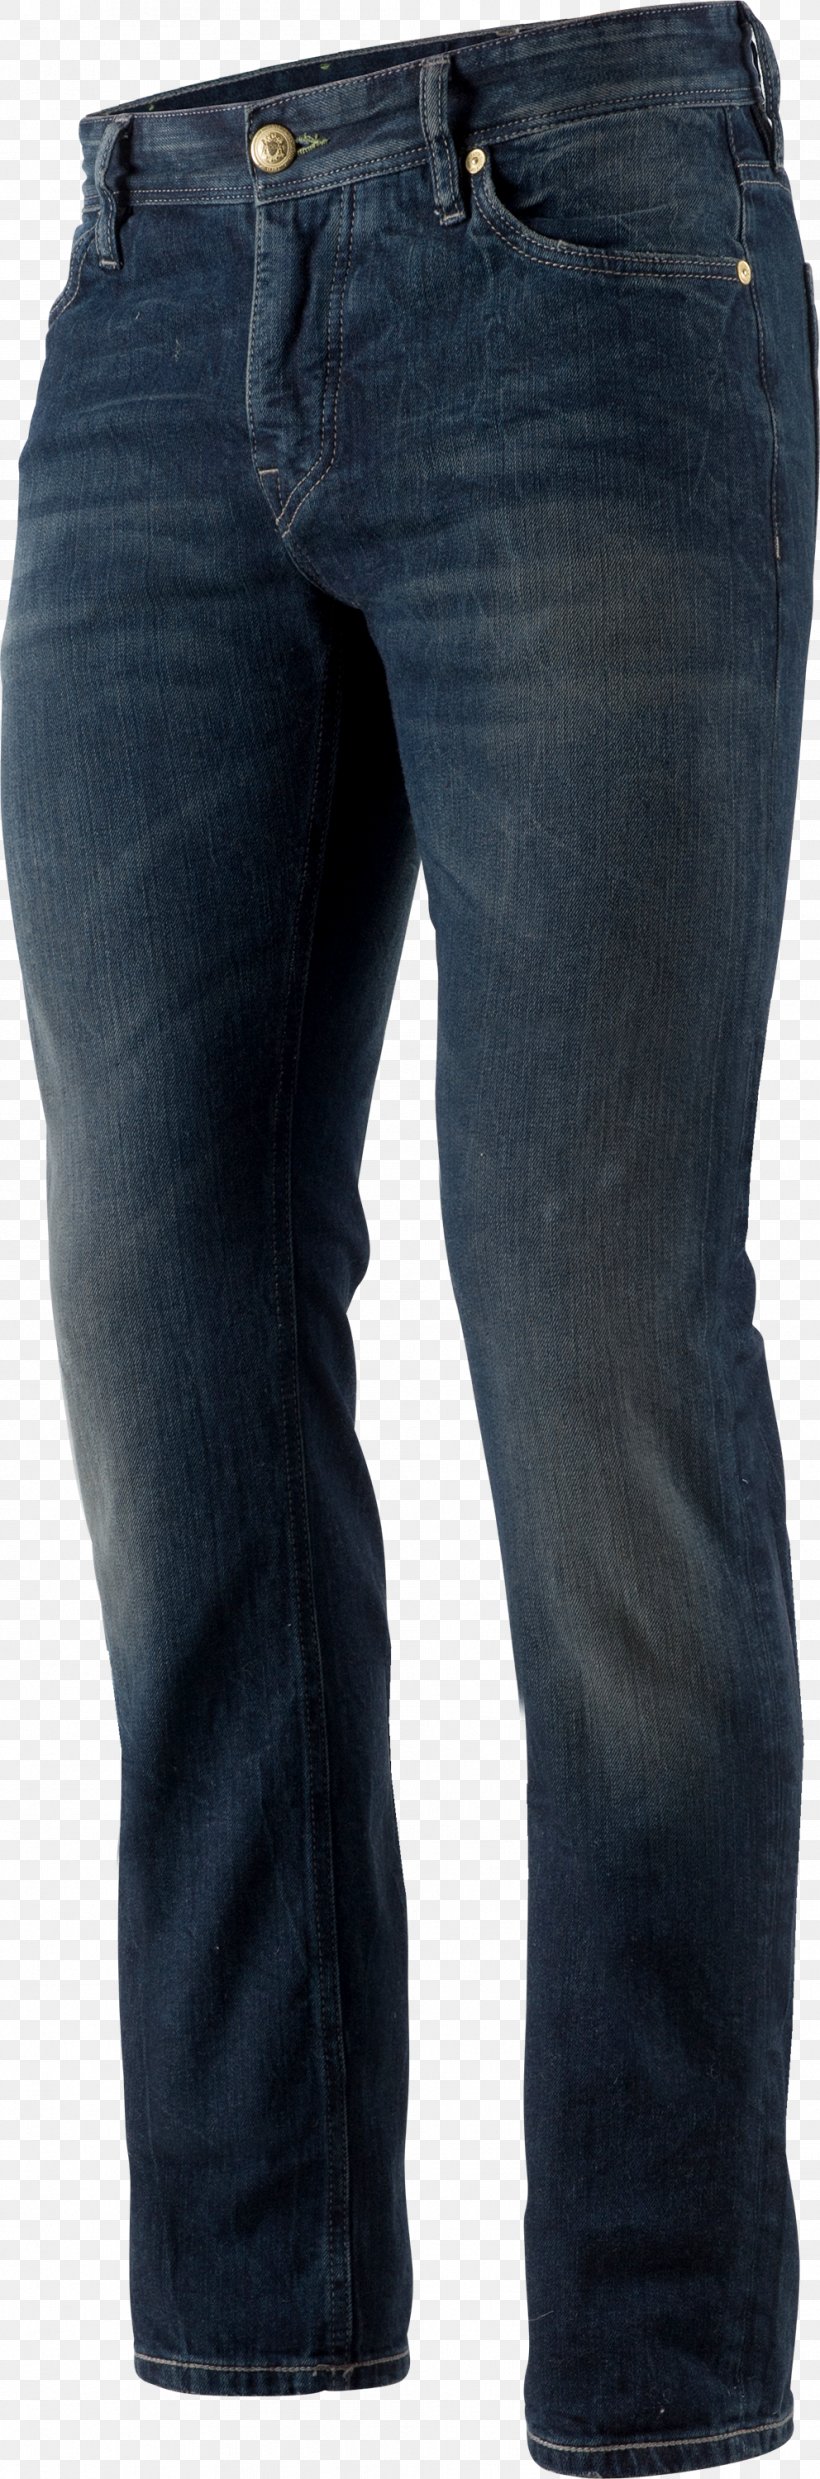 Pants Zipp-Off-Hose Jeans Denim Craghoppers, PNG, 992x3000px, Pants, Capri, Craghoppers, Denim, Jeans Download Free